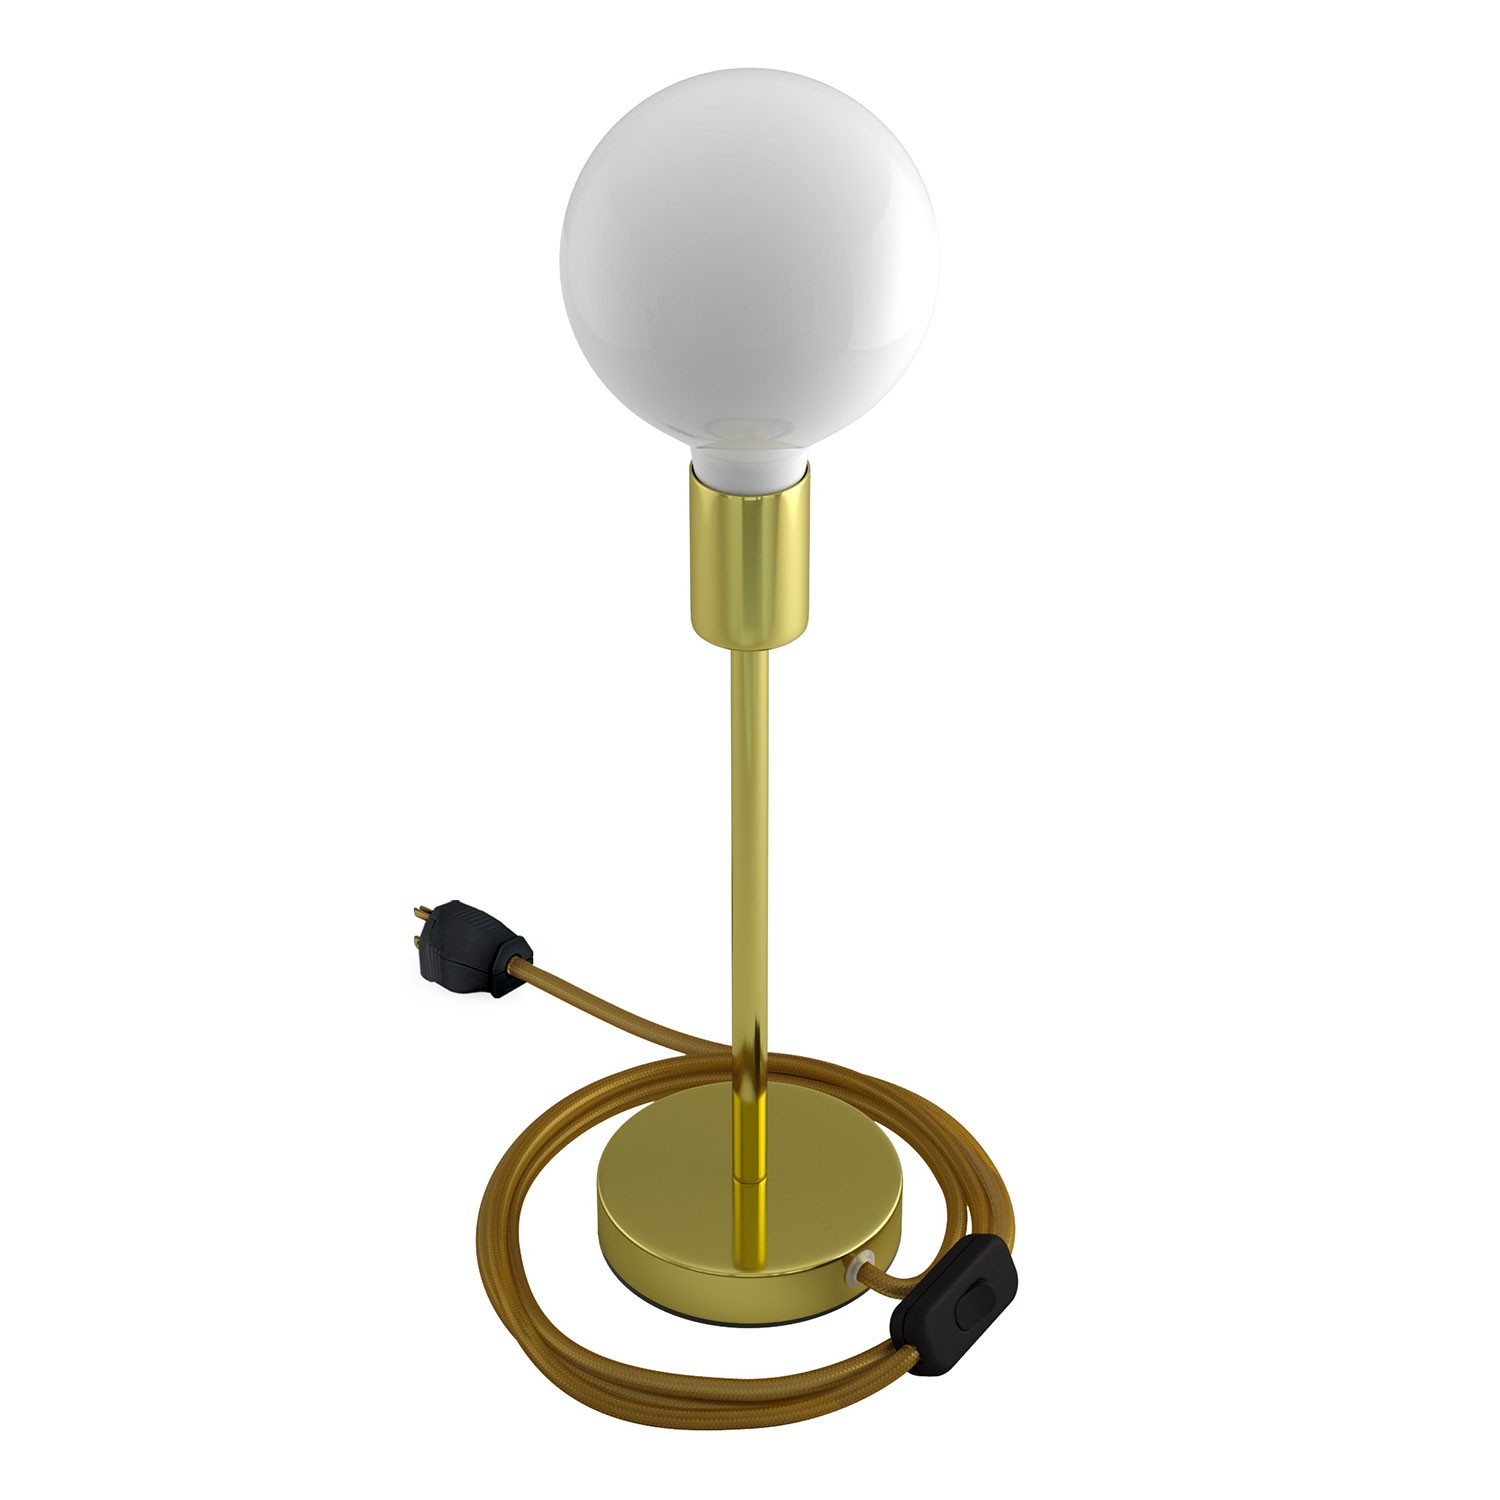 Alzaluce - Lámpara de mesa en metal con cable, interruptor y clavija